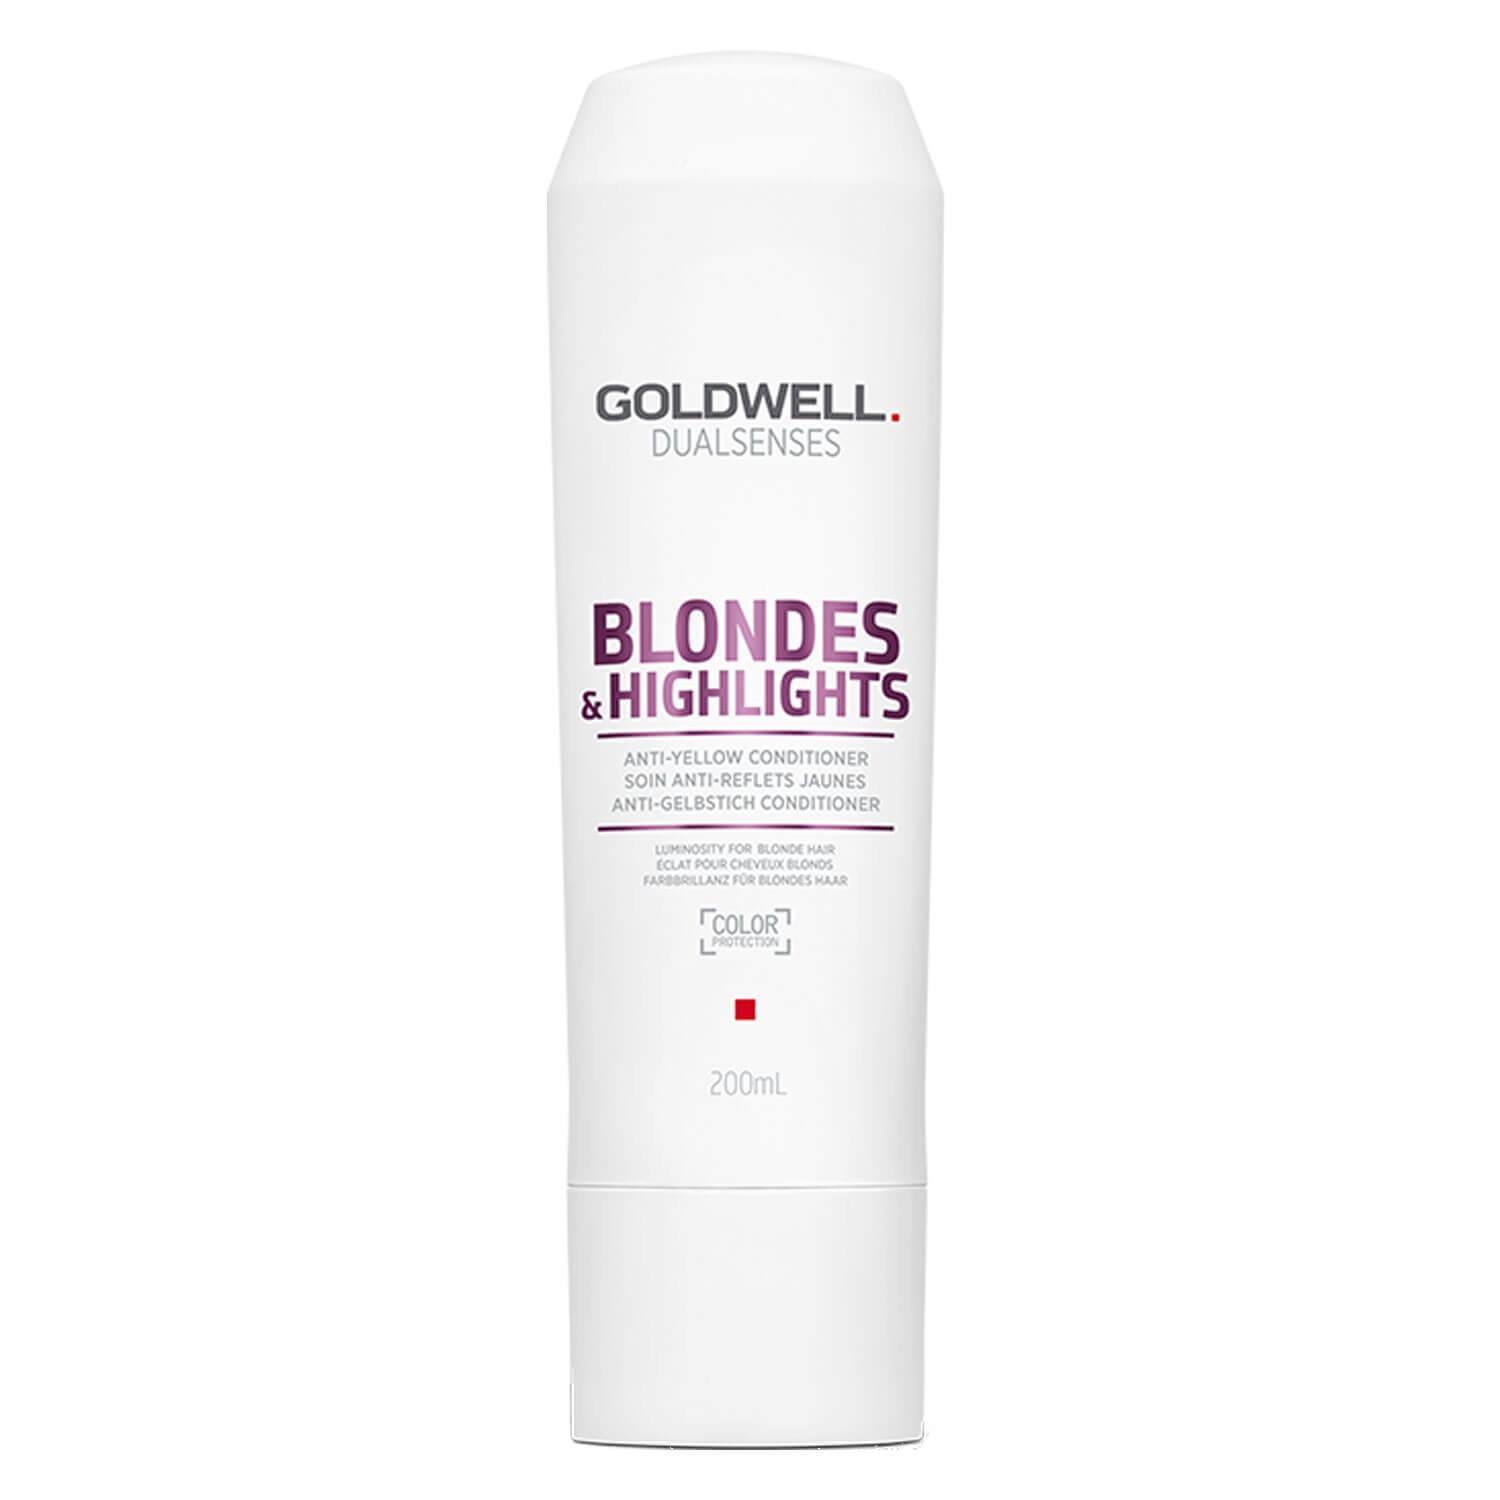 Produktbild von Dualsenses Blondes & Highlights - Anti-Yellow Conditioner